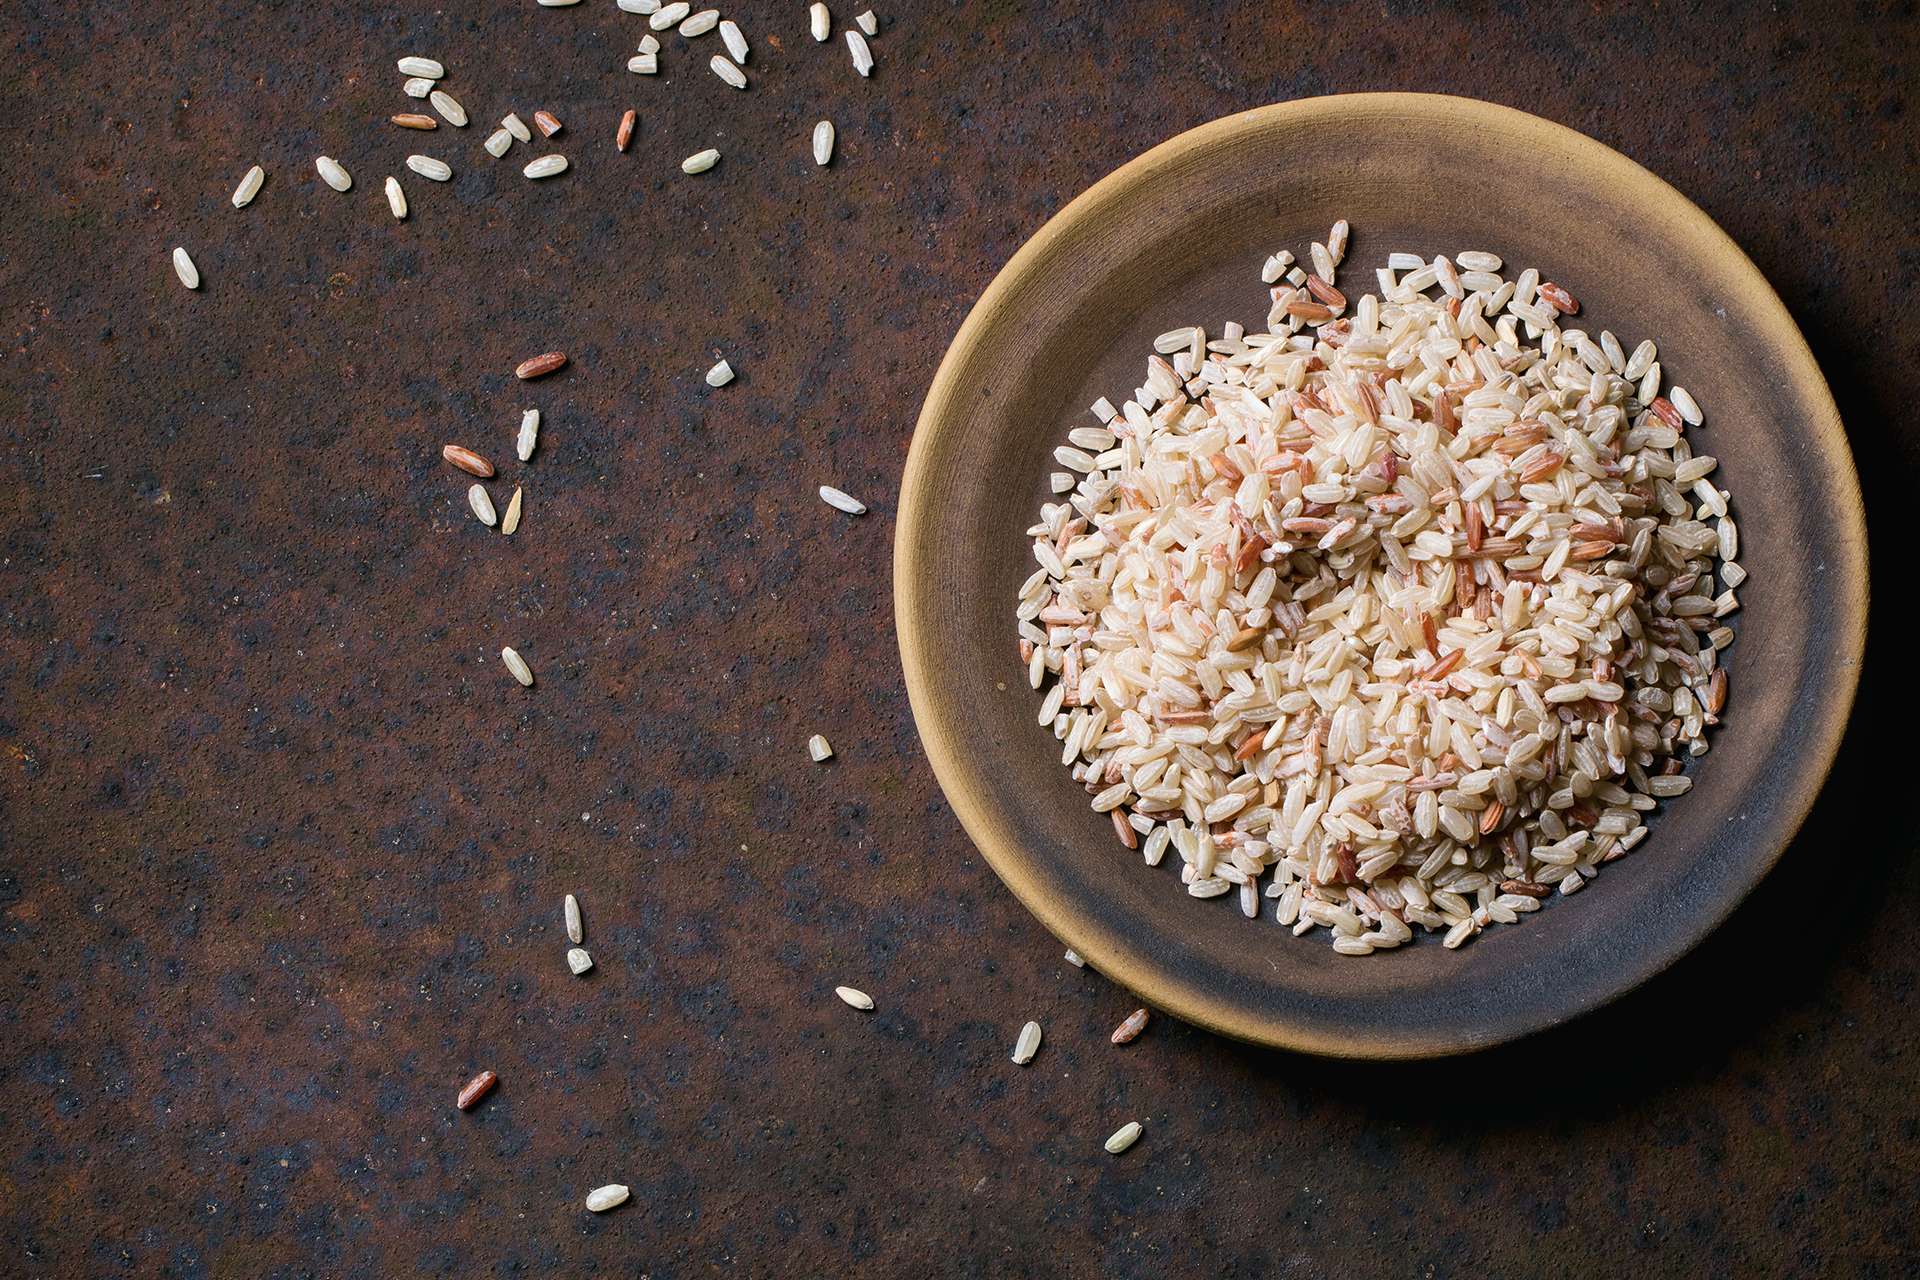 Atvėsus ryžius virimo metu, galite gauti naudos iš šio konkretaus krakmolo